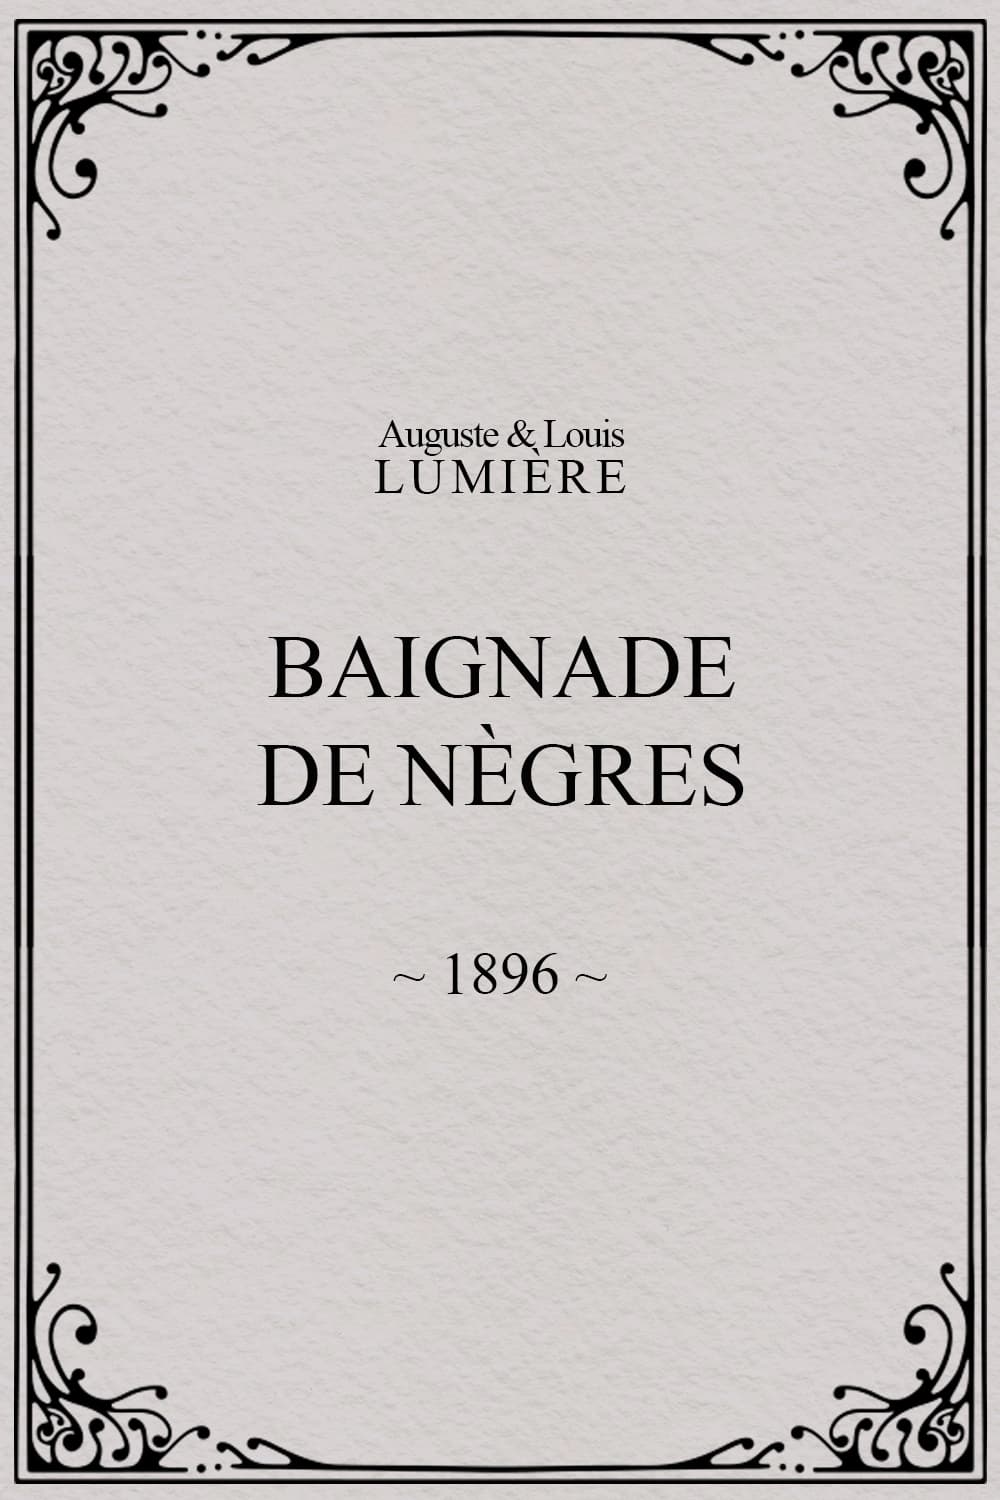 Baignade de nègres (1896)